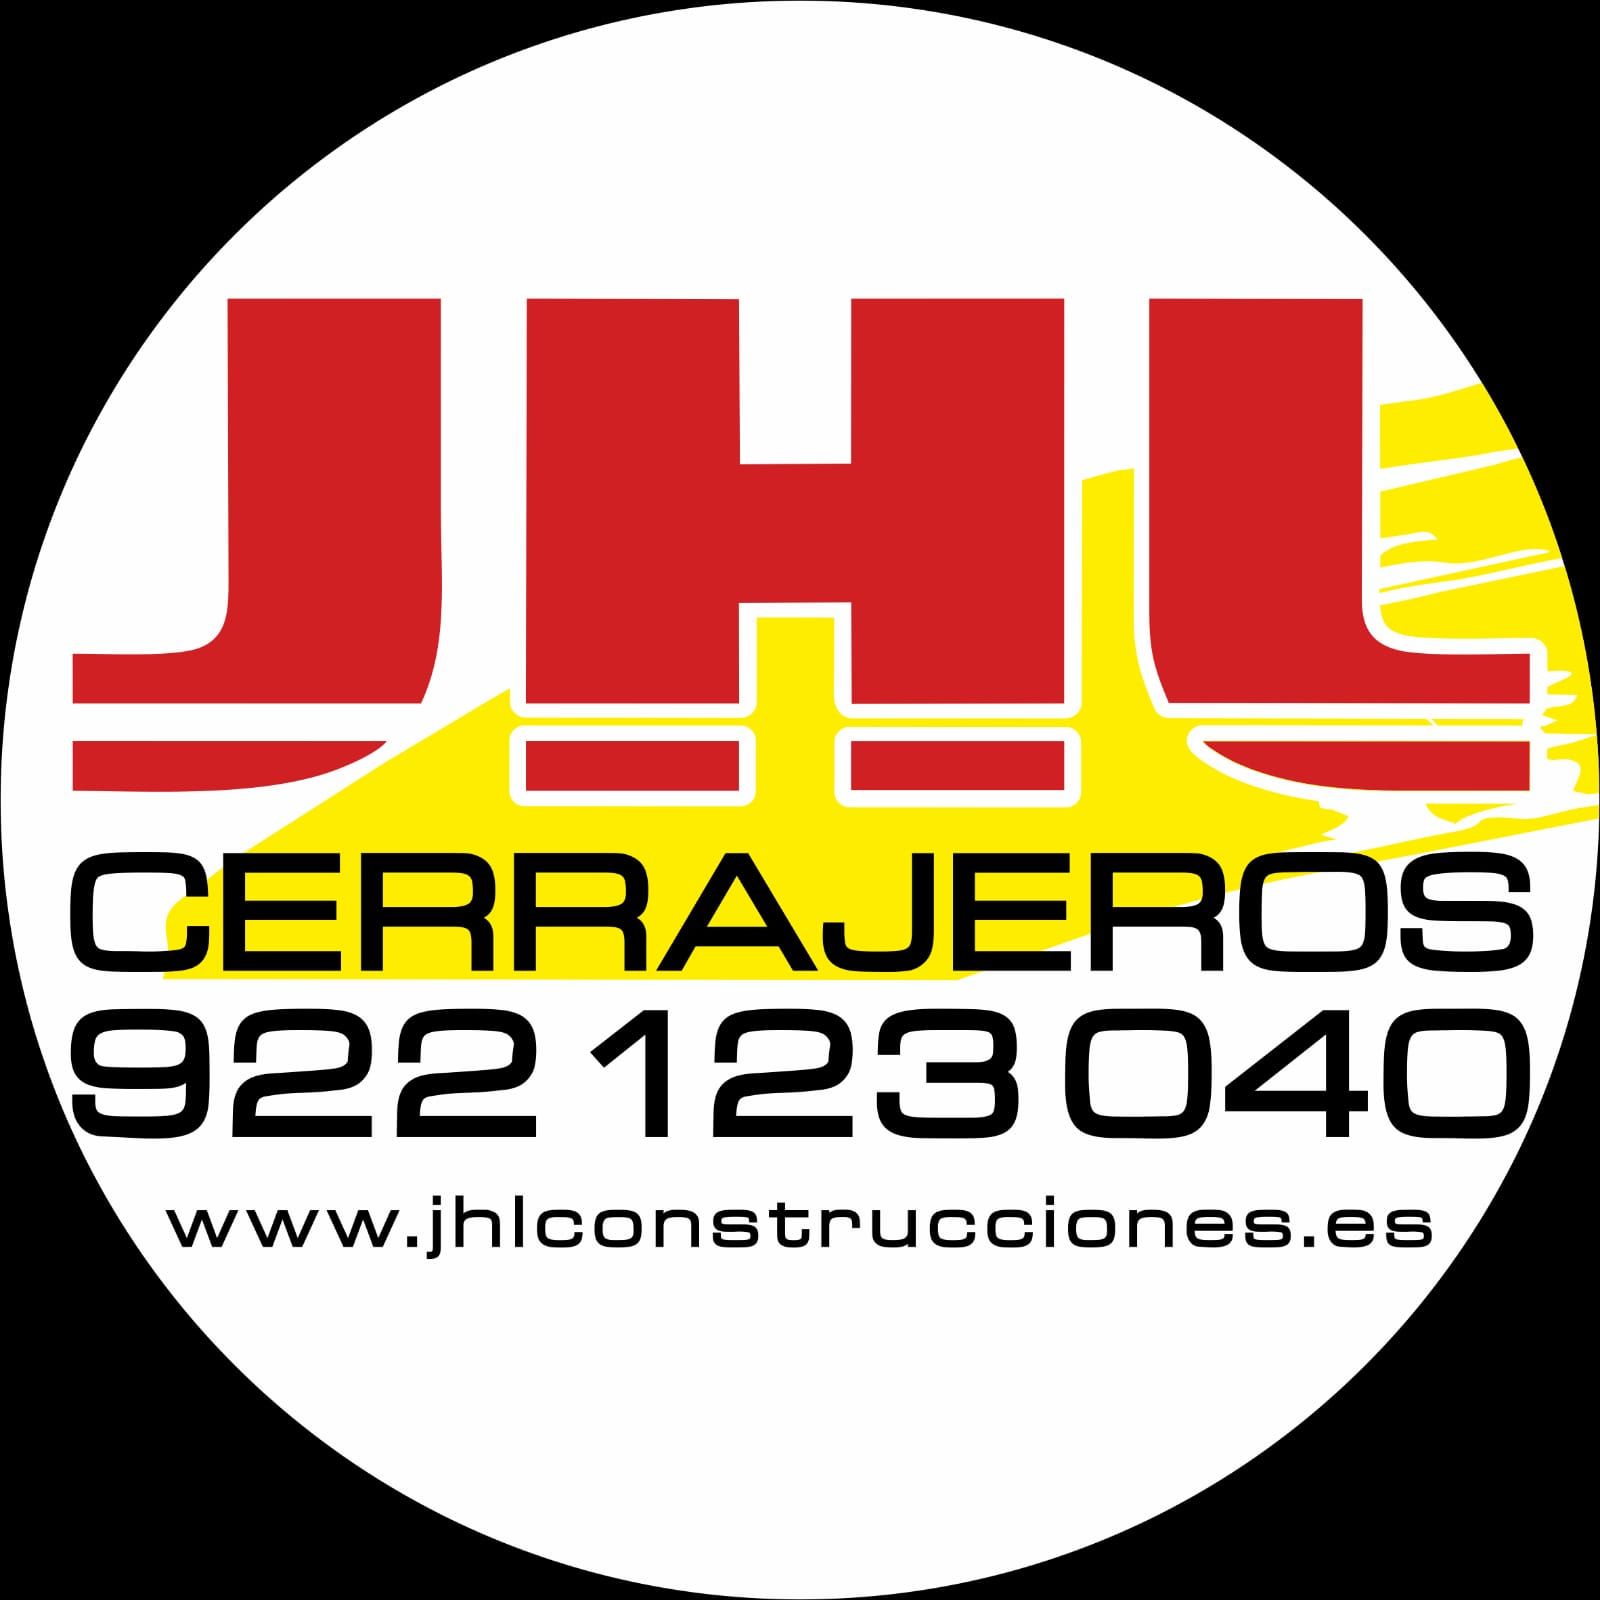 Servicios de Cerrajería: Servicios de JHL Construcciones Canarias }}